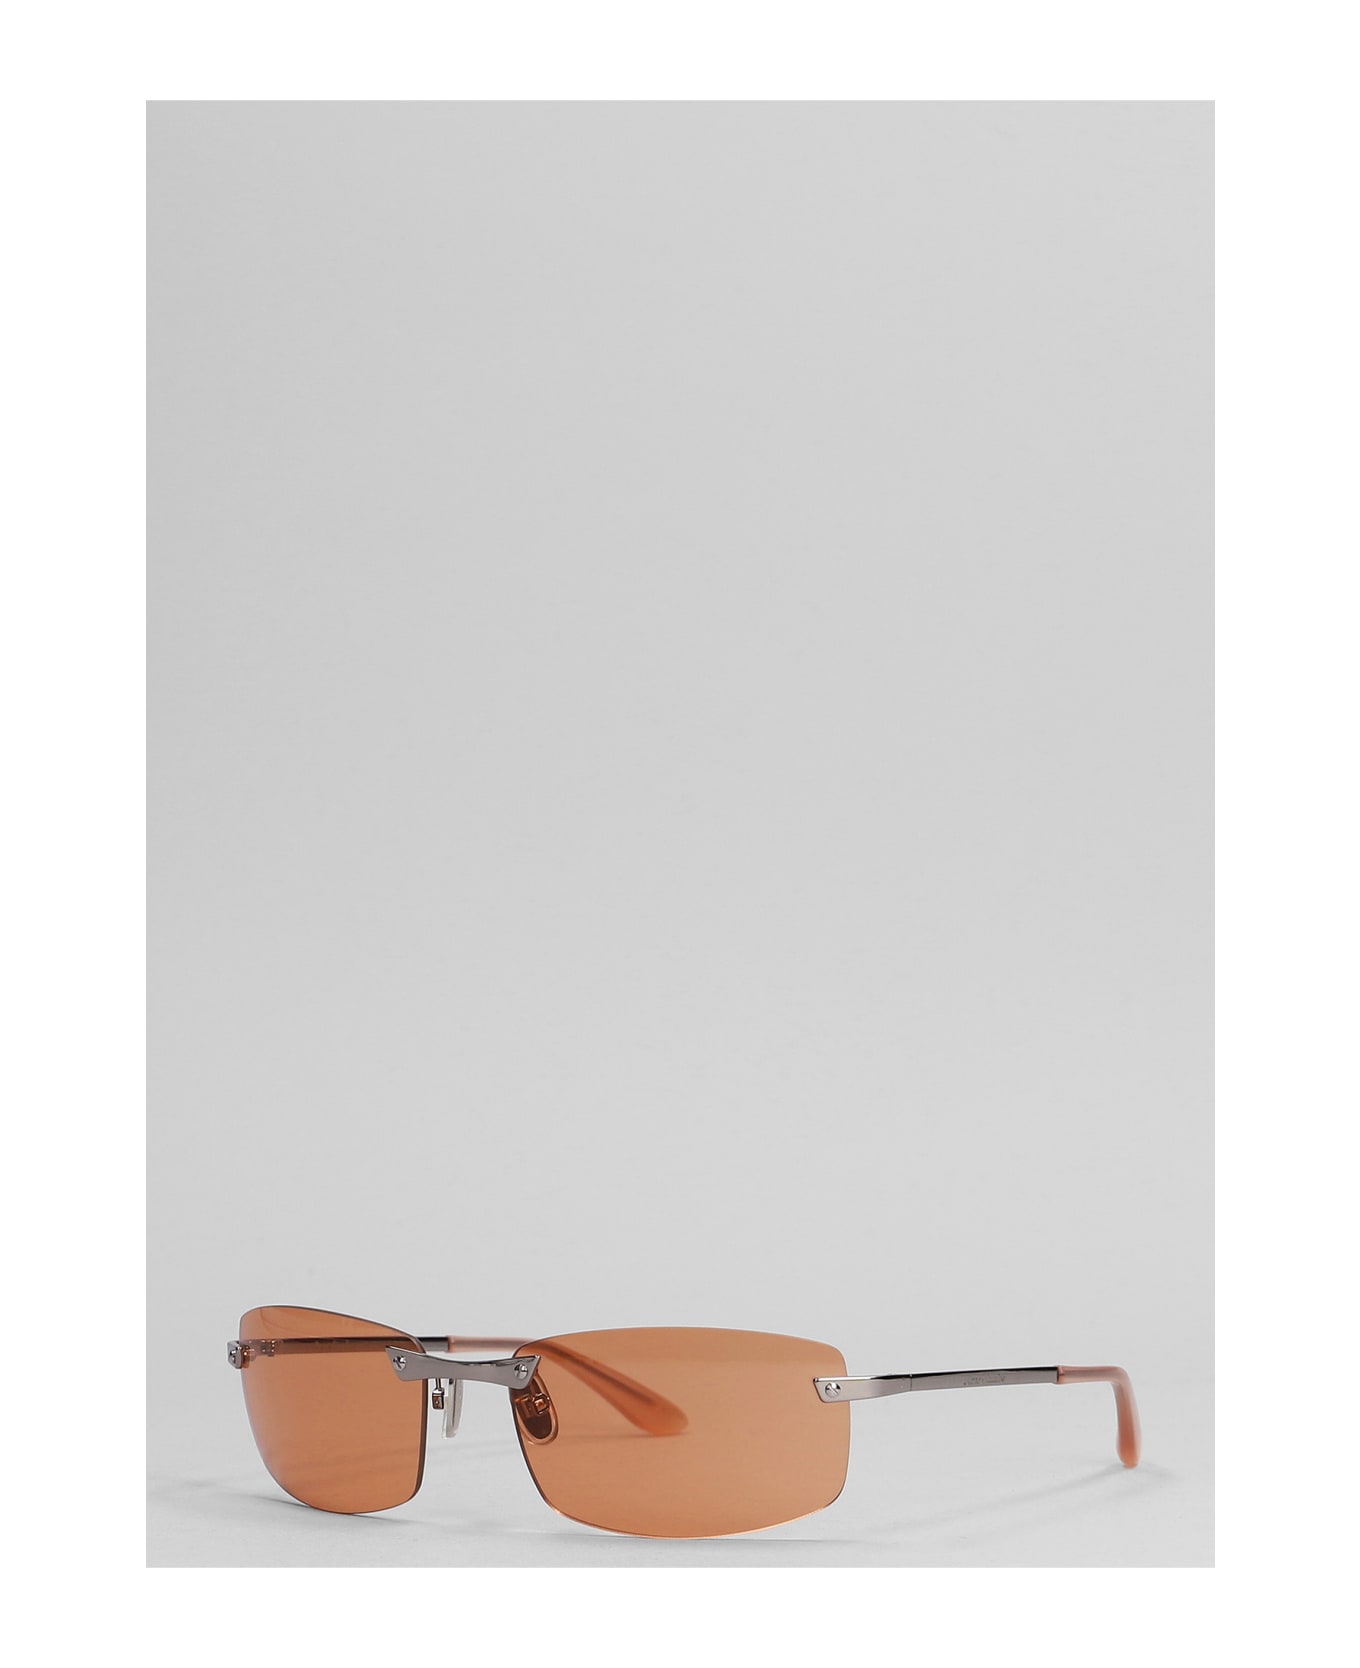 Acne Studios Sunglasses In Orange Metal Alloy - orange